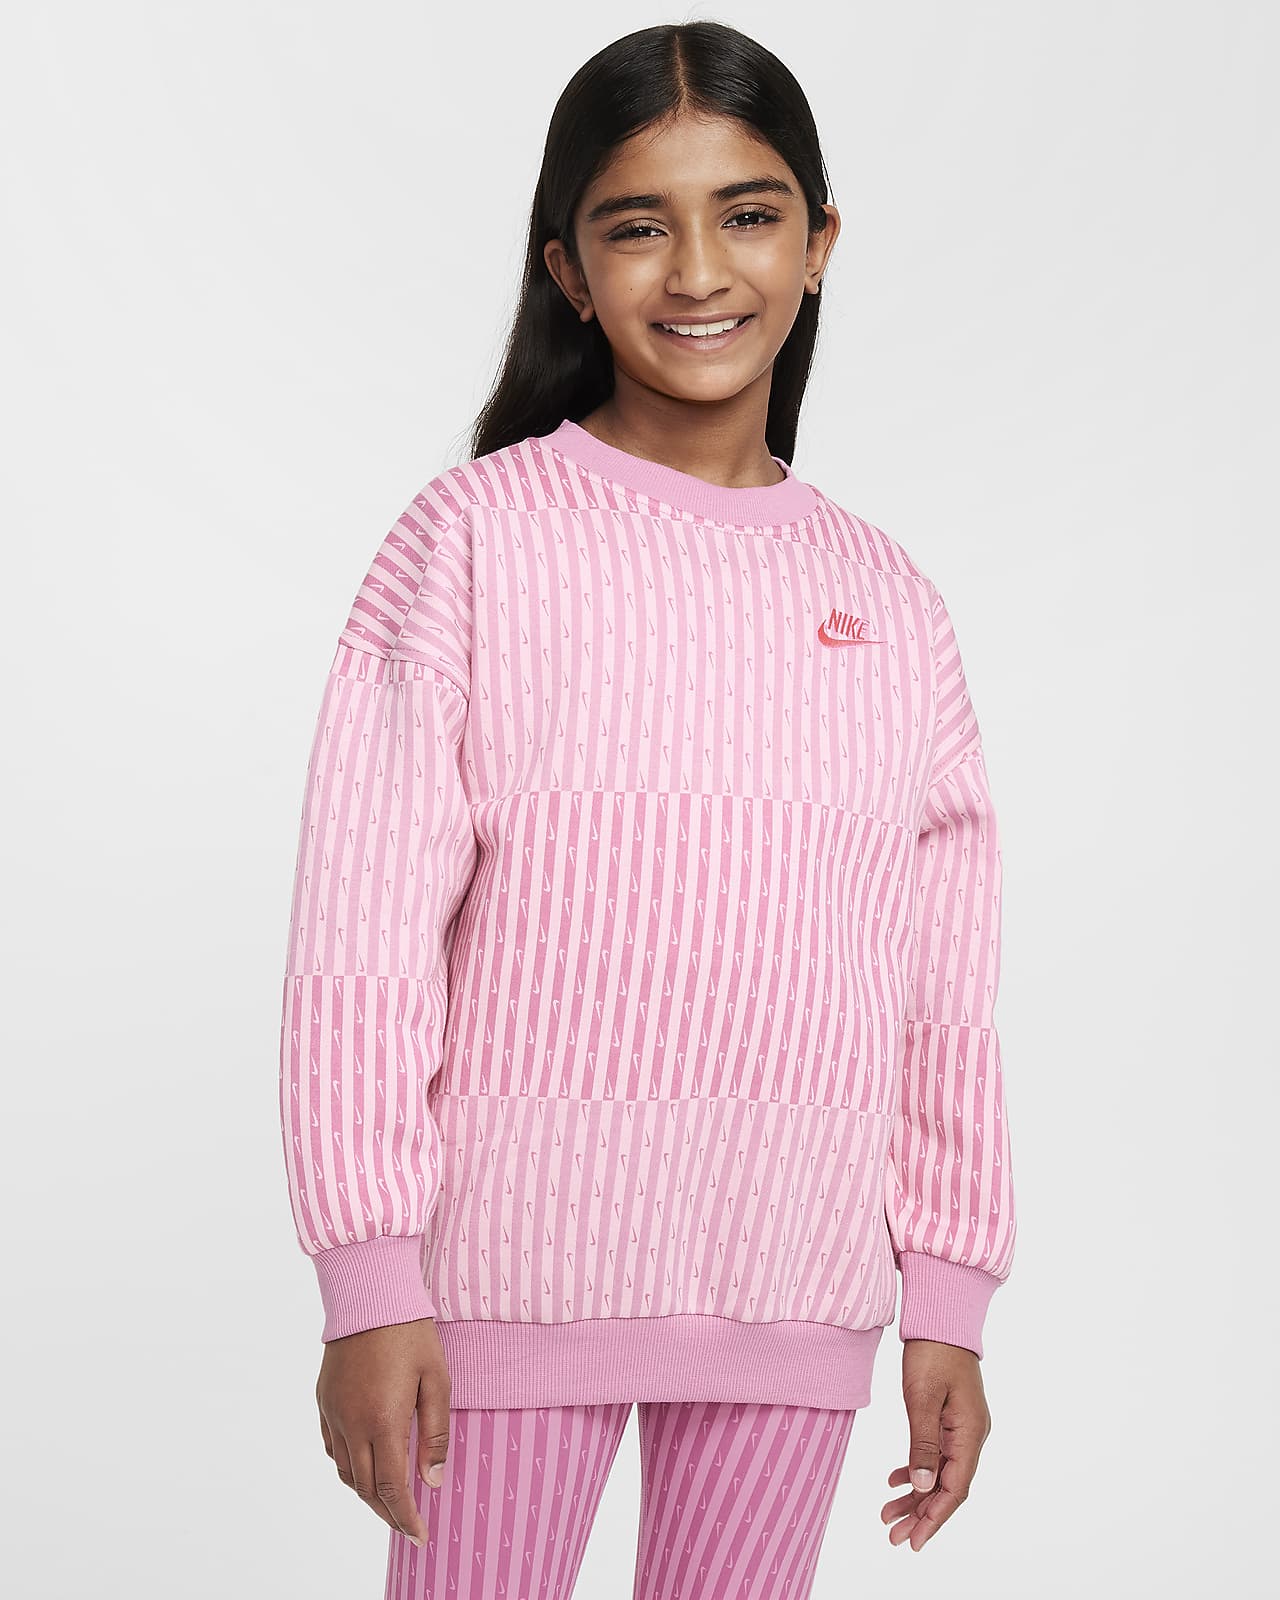 Nike Sportswear Club Fleece Older Kids' (Girls') Oversized Sweatshirt